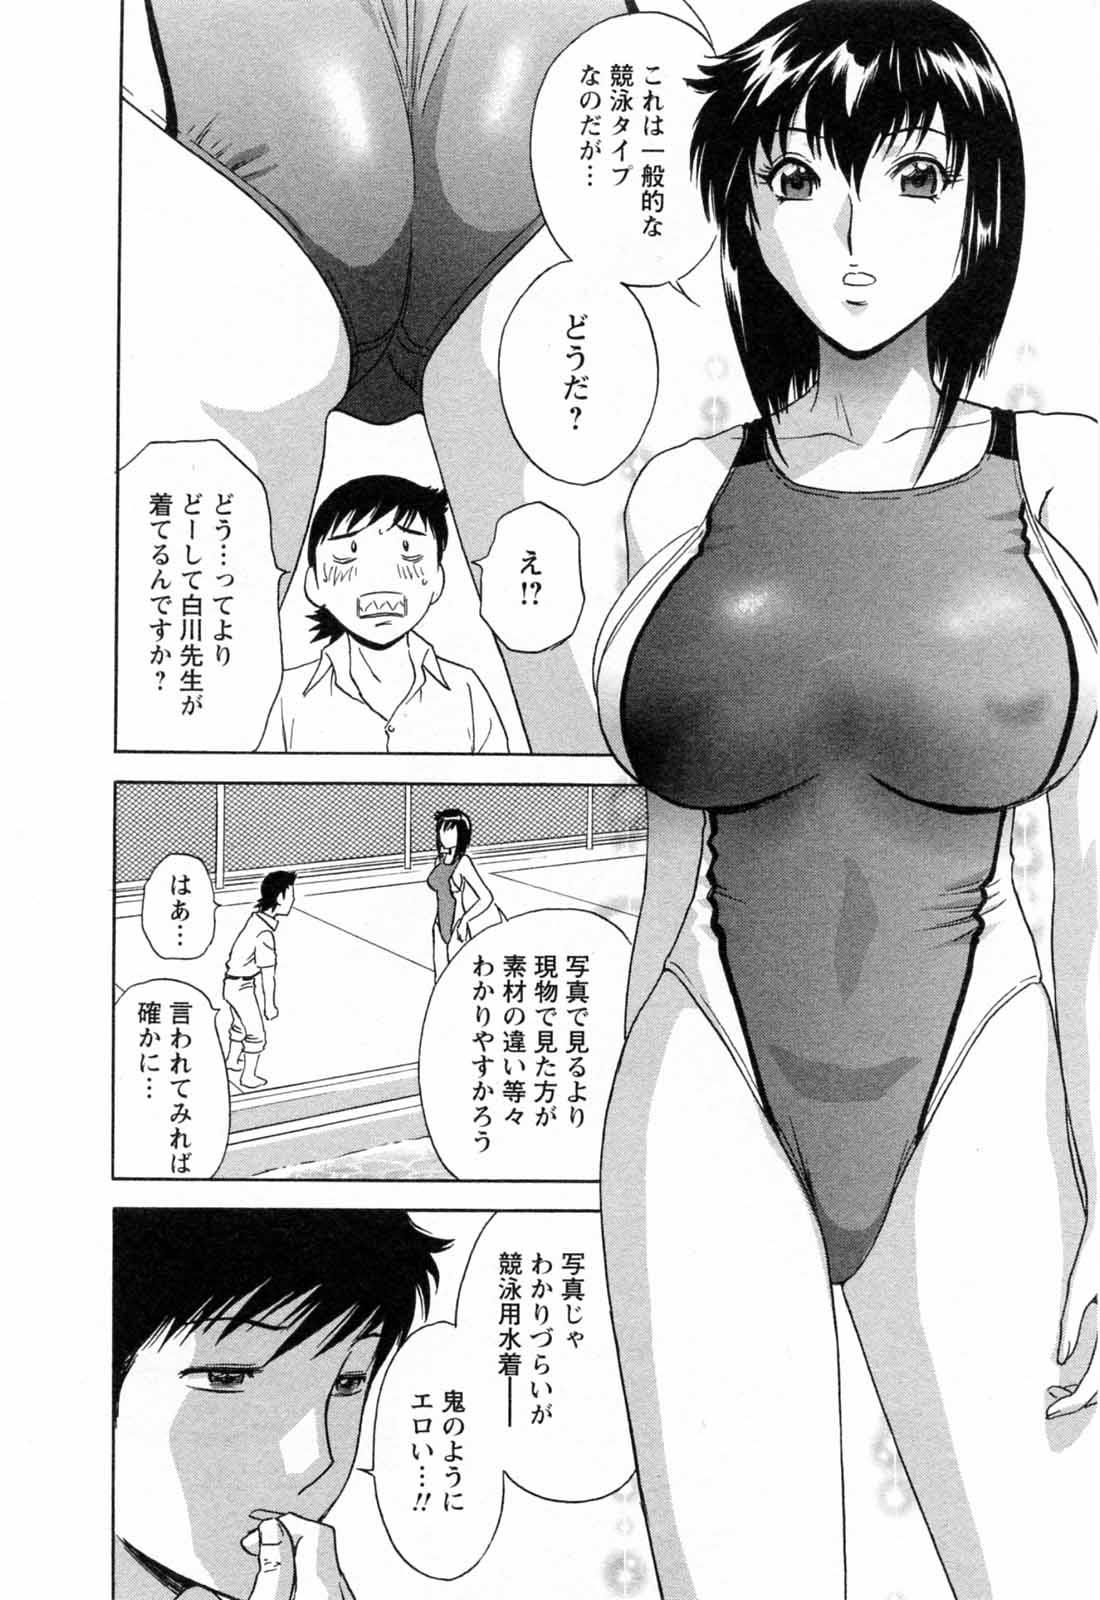 [Hidemaru] Mo-Retsu! Boin Sensei (Boing Boing Teacher) Vol.5 117